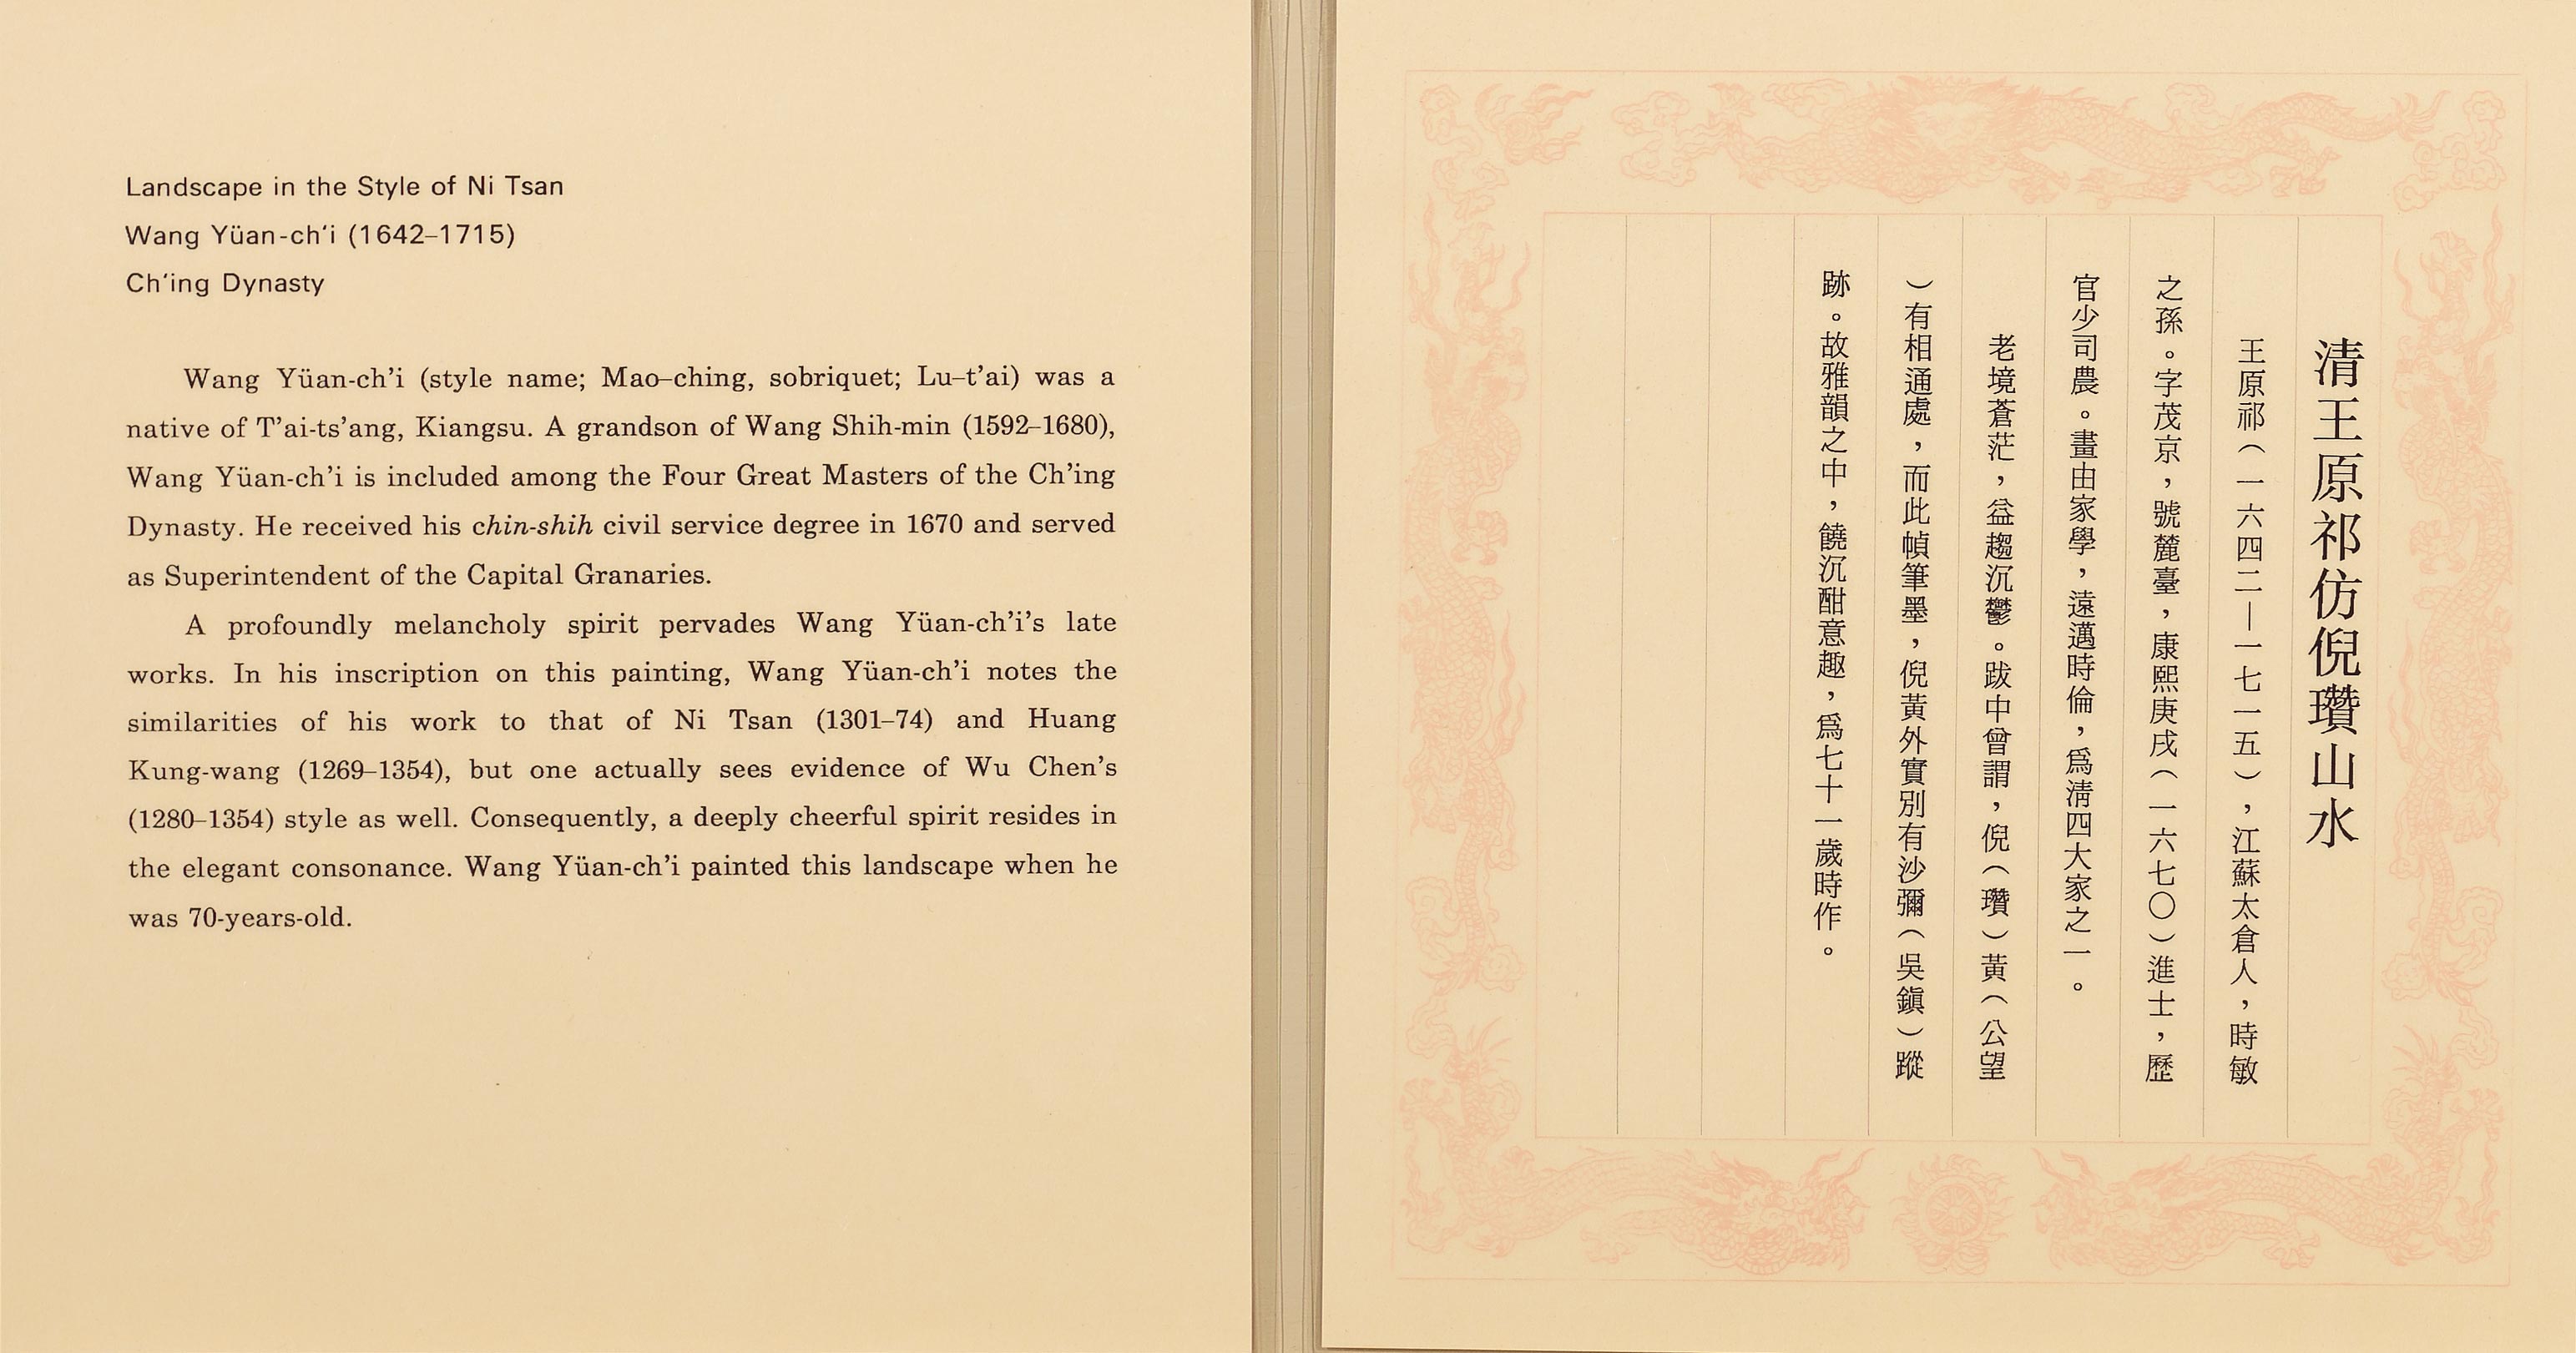 民國八十年代後期龍紋邊框說明卡內容已多採用照相打字印製。